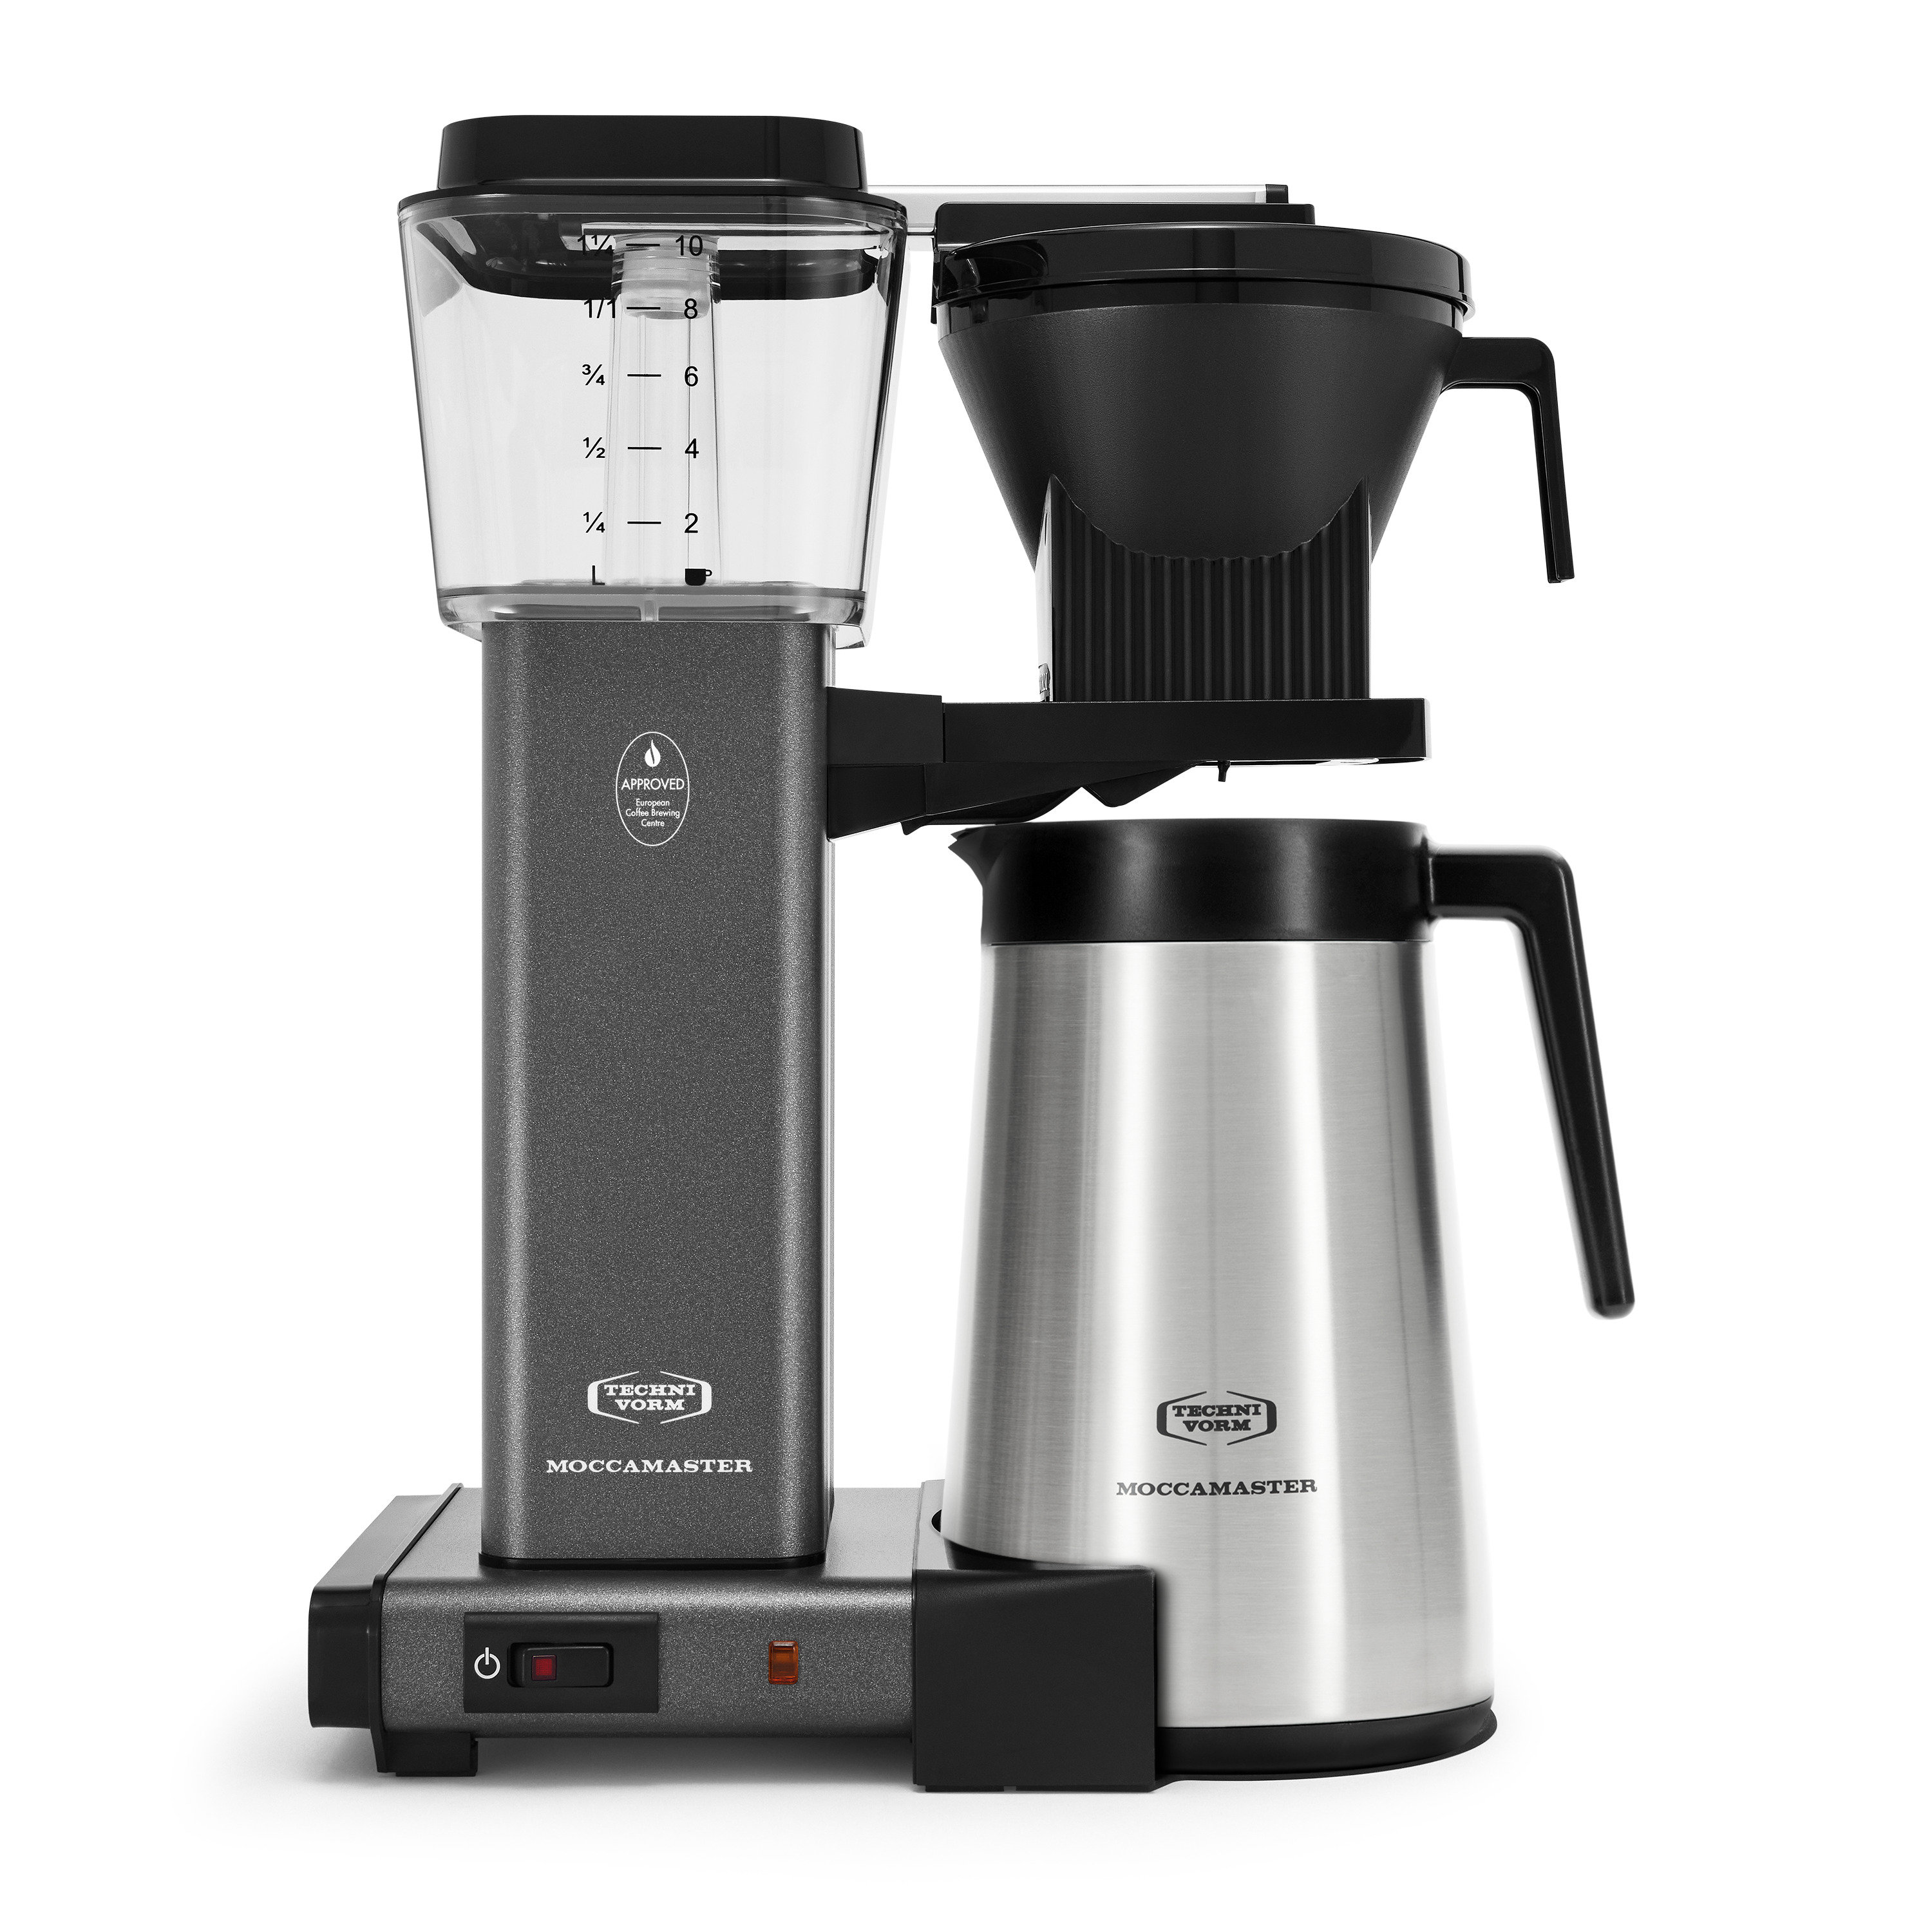 https://assets.wfcdn.com/im/41339145/compr-r85/2408/240888663/moccamaster-10-cup-kbgt-coffee-maker.jpg